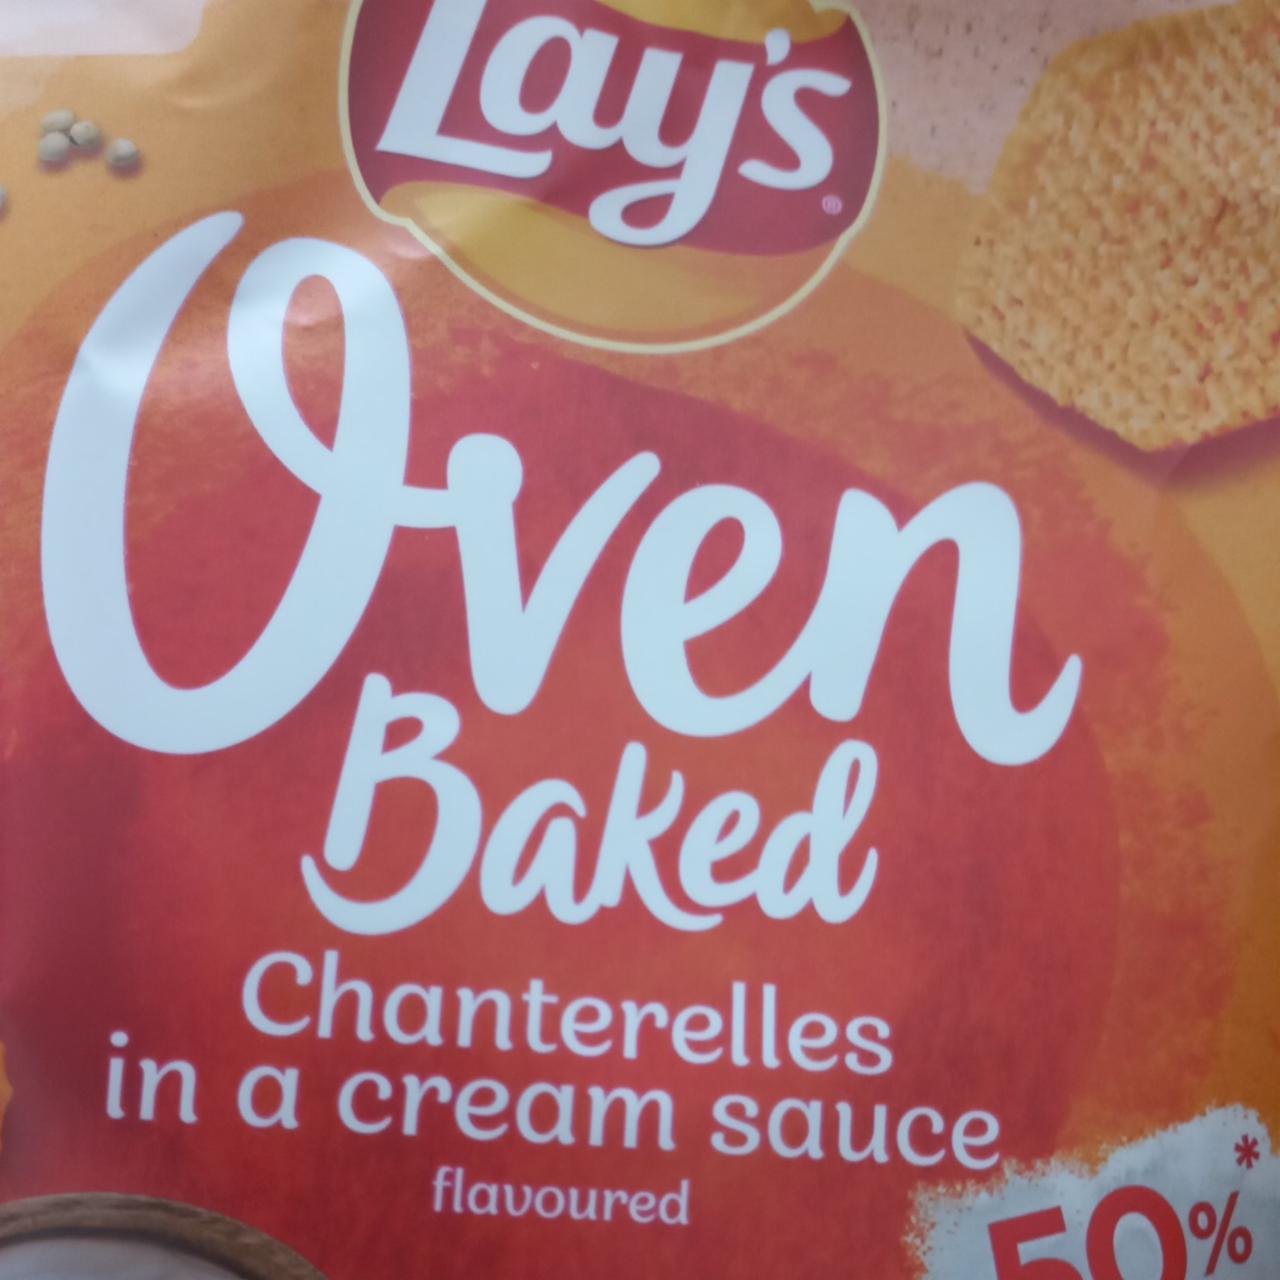 Zdjęcia - Oven baked chanterelles in a cream sauce Lay's